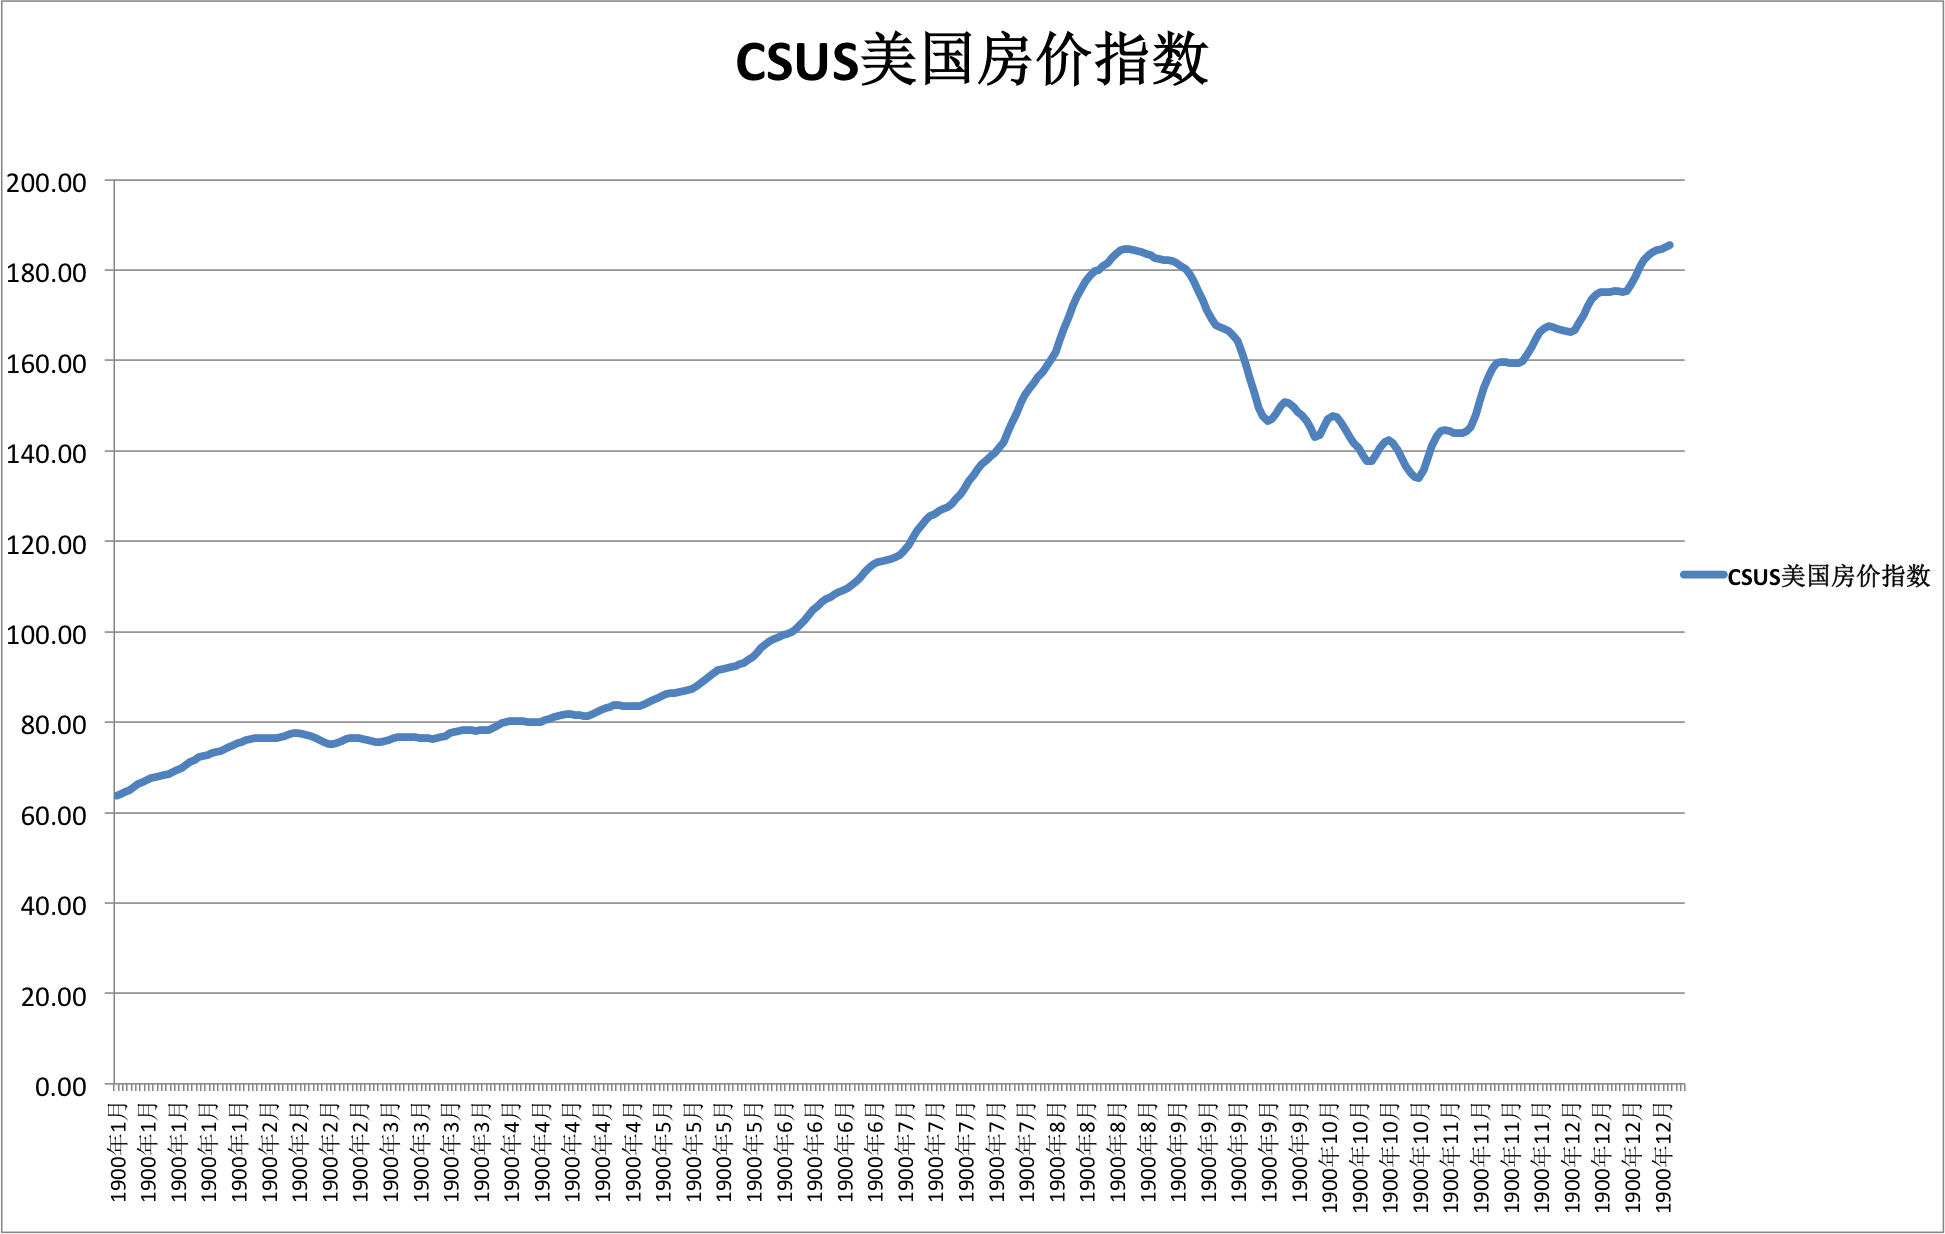 CSUS美国房价指数